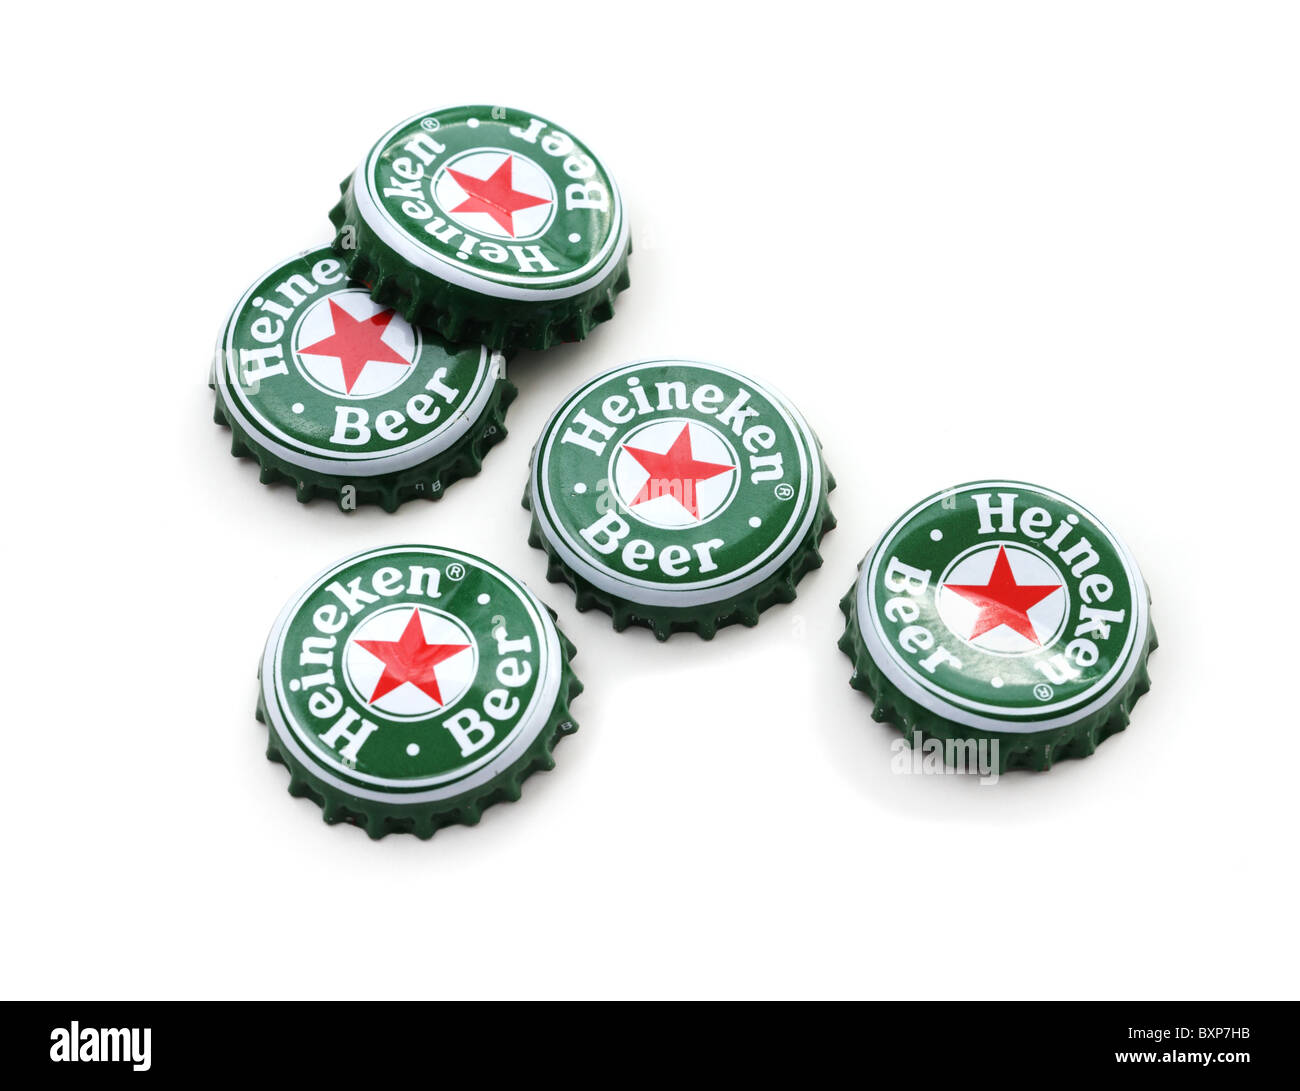 Heineken beer bottle caps on white background. Stock Photo